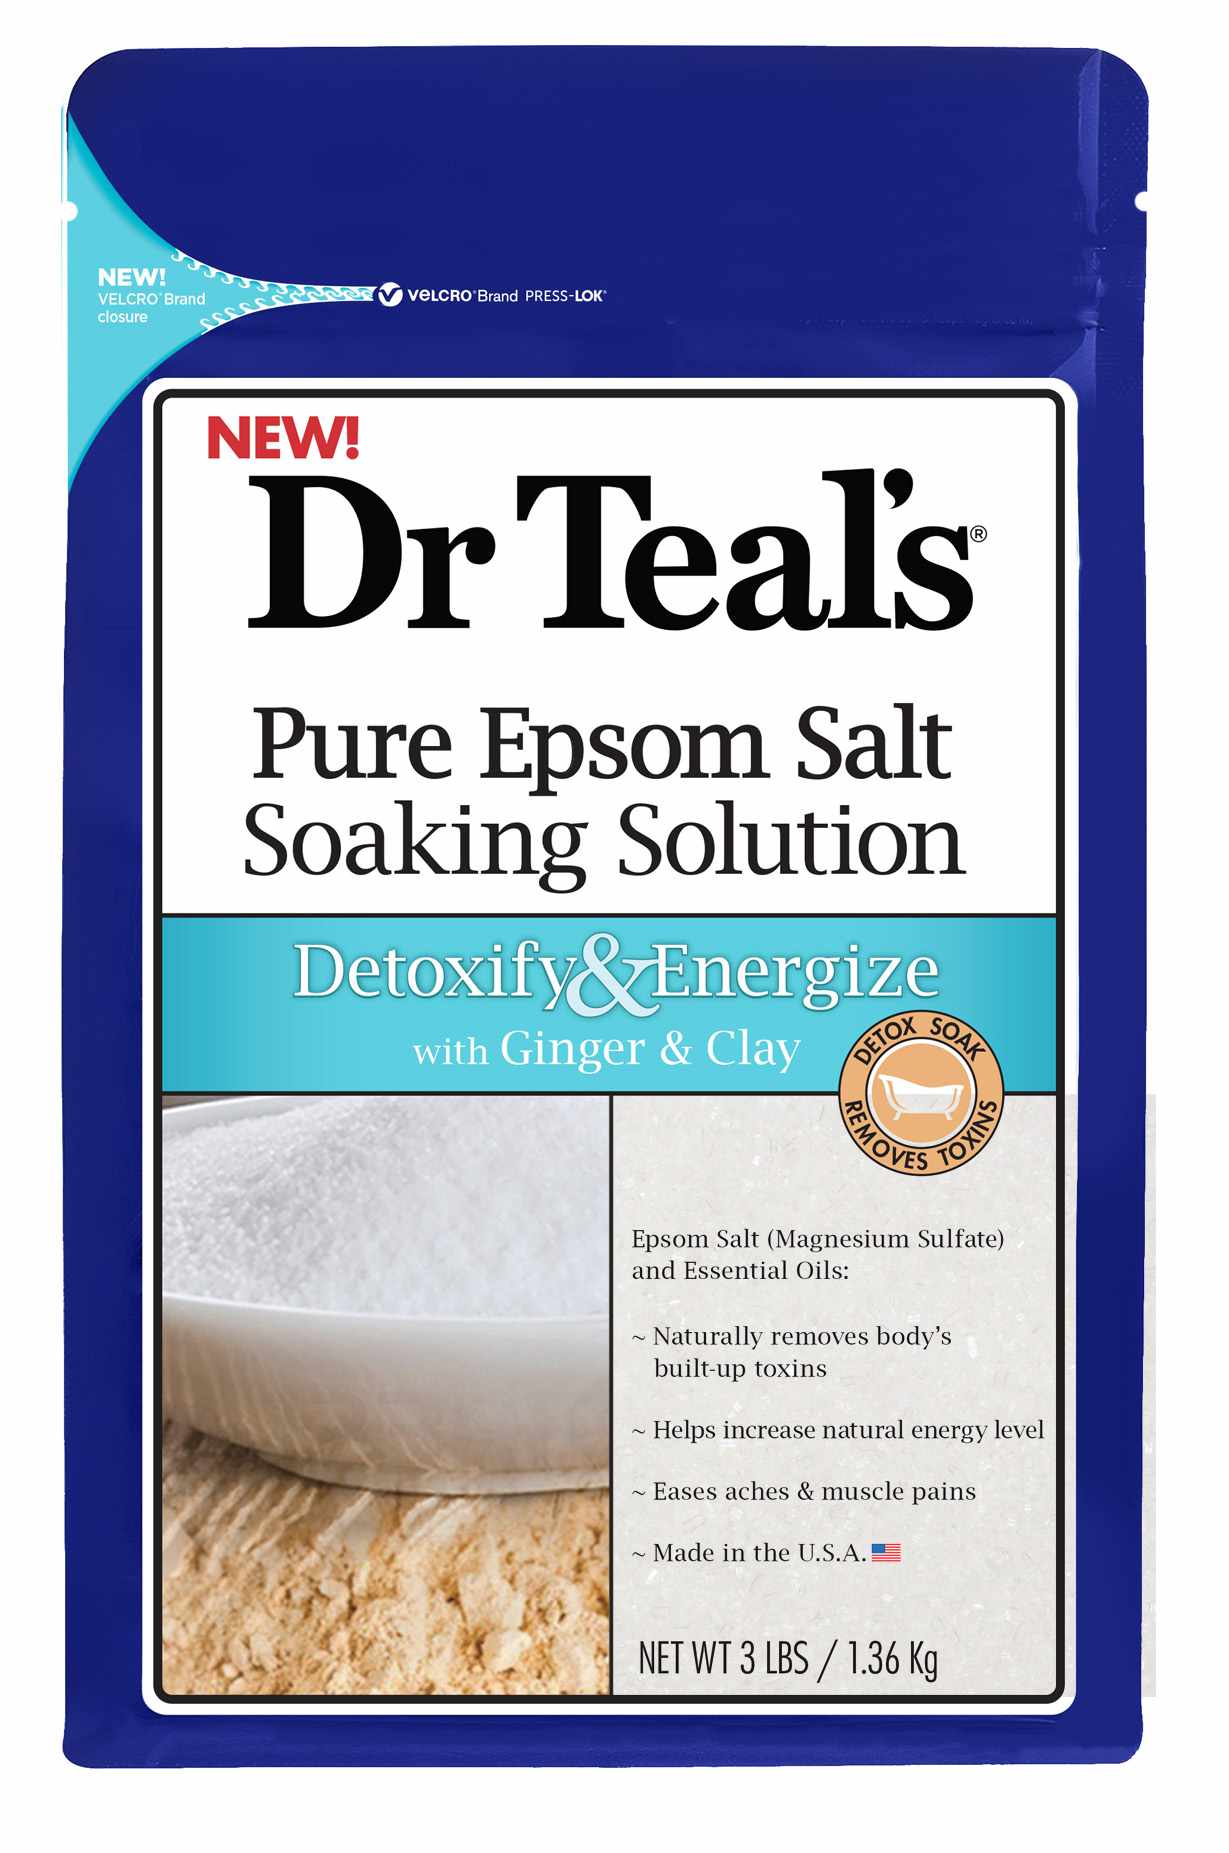 Dr. Teals Pure Epsom Salt